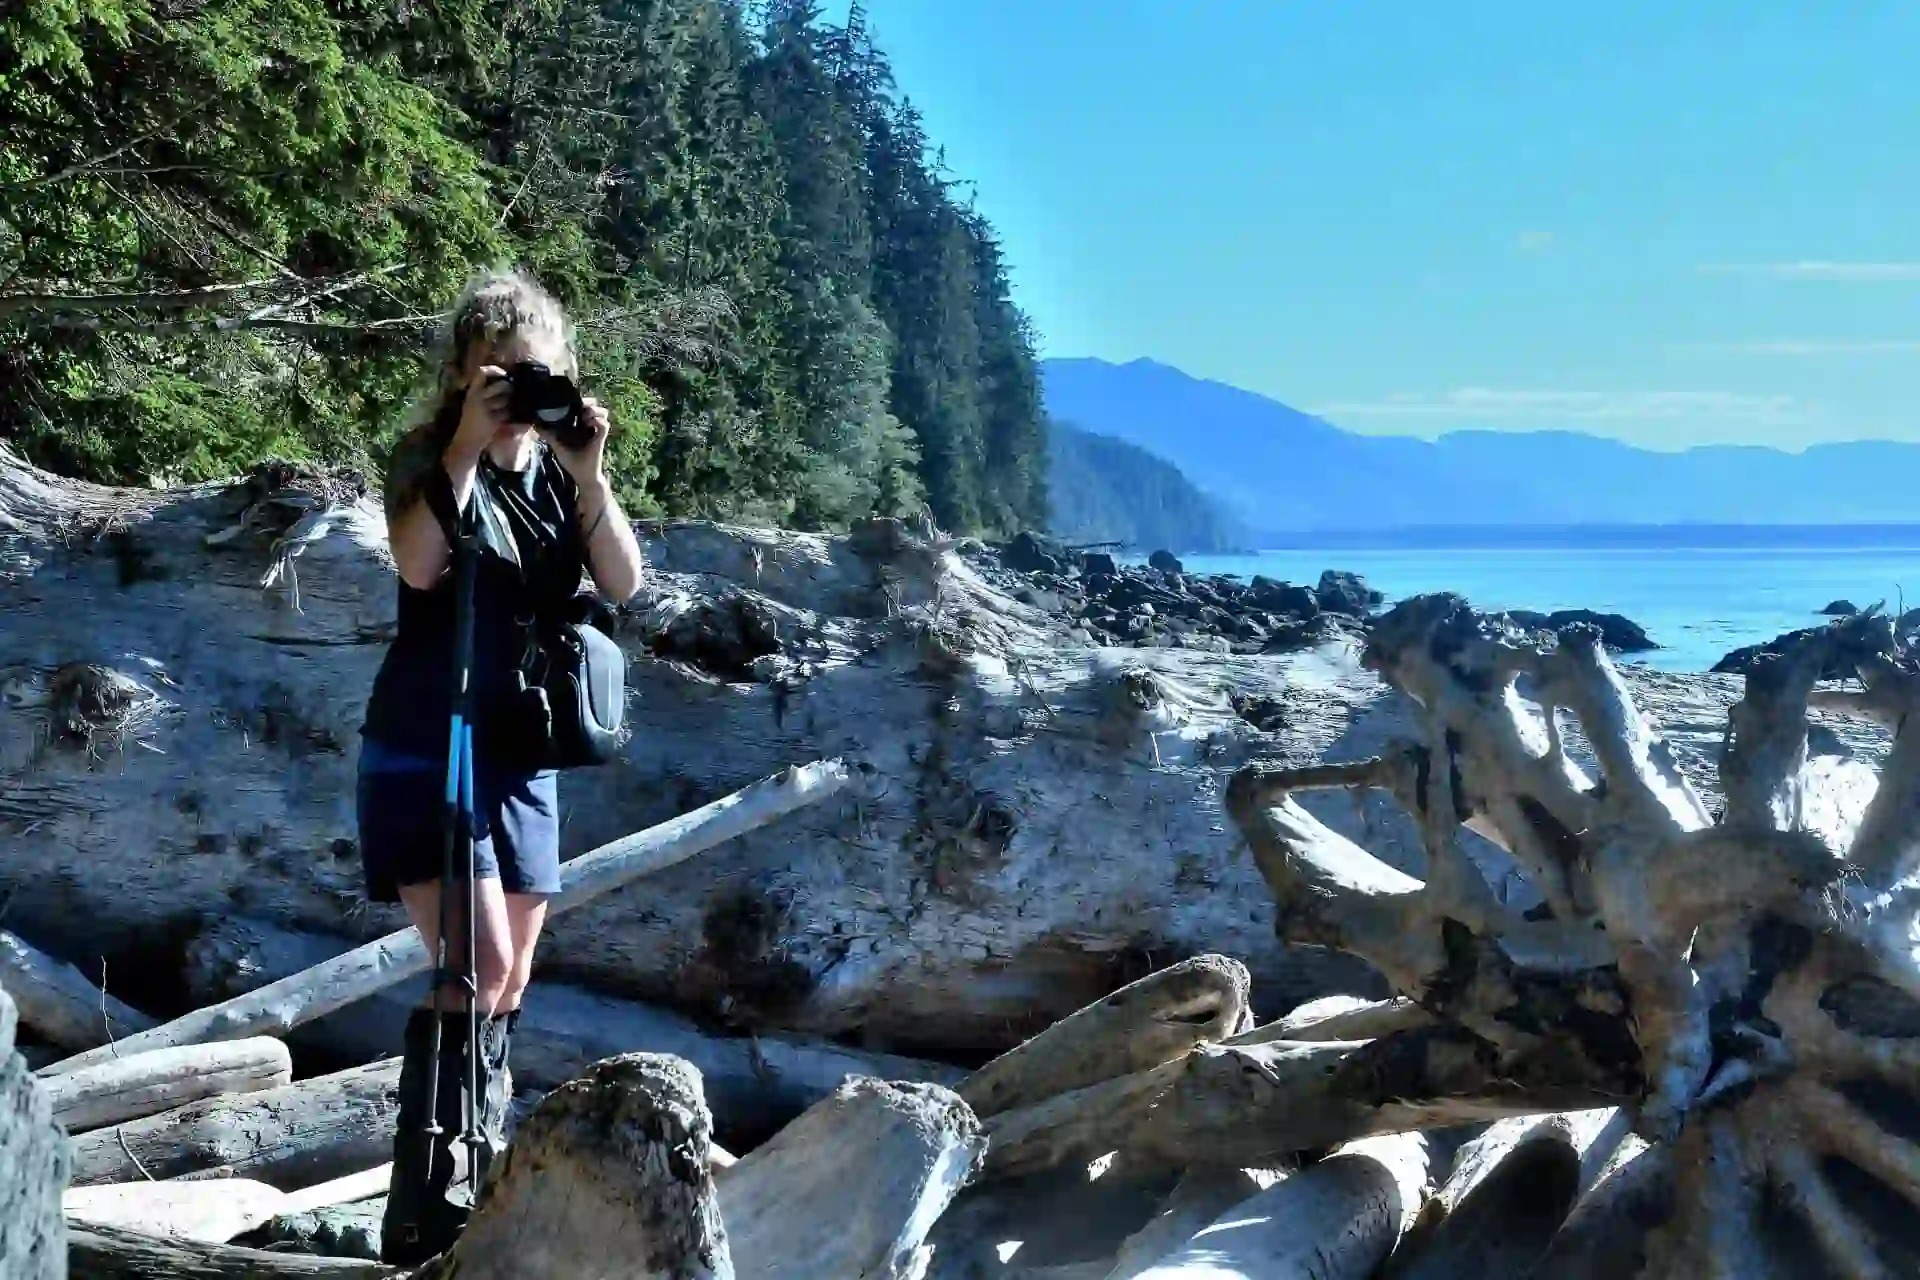 Auf dem West Coast Trail, Vancouver Island in Westkanada, Verena Schmidt steht auf Treibholz und fotografiert